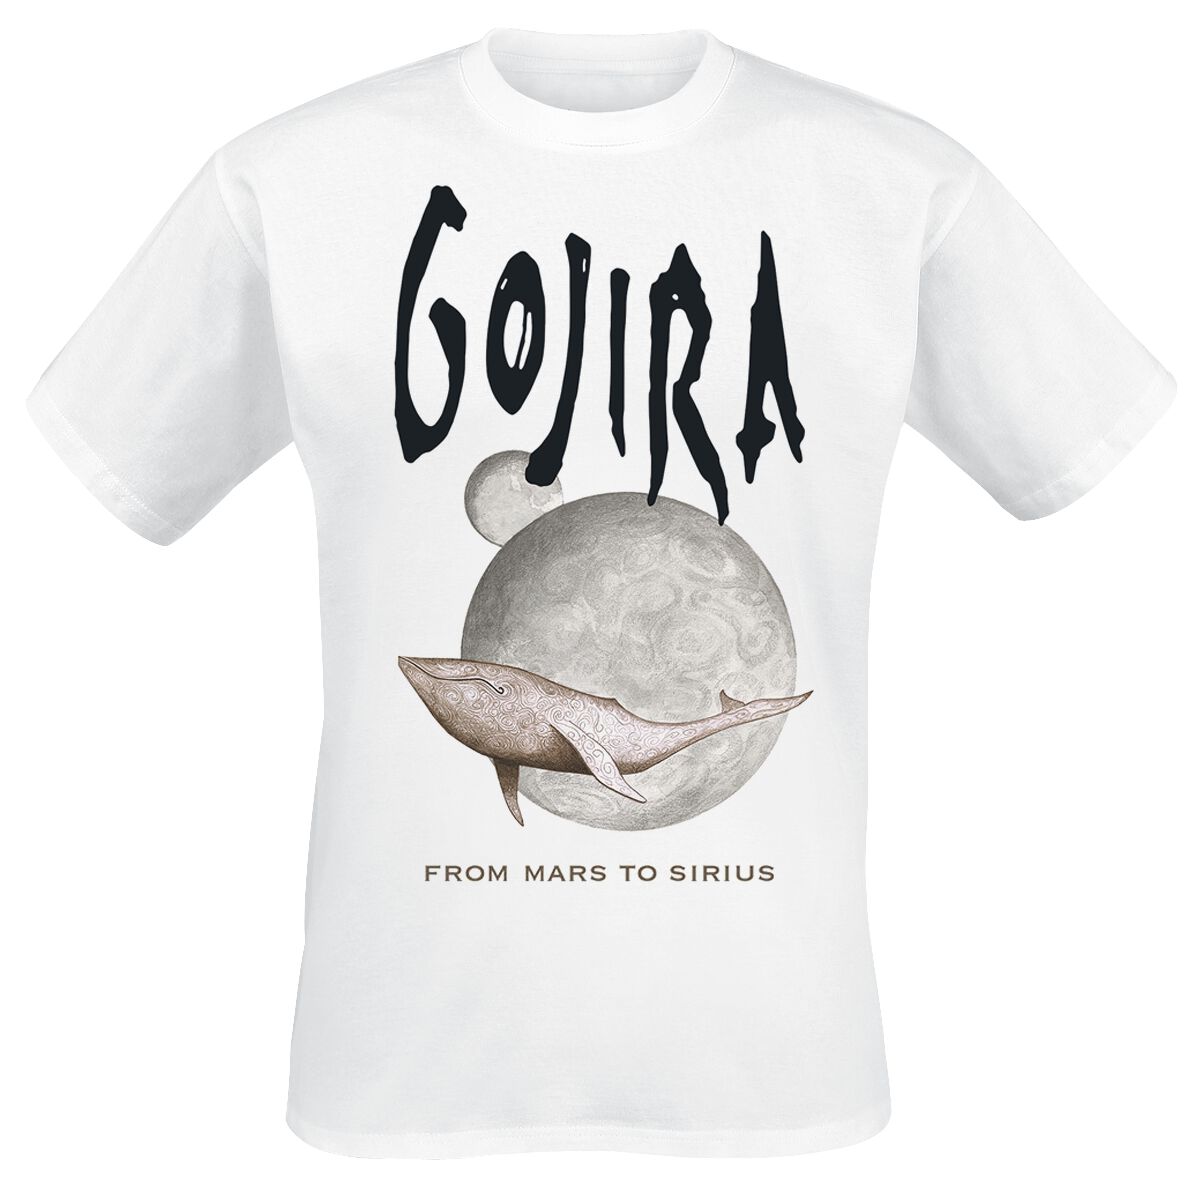 Gojira T-Shirt - Whale From Mars - S bis L - für Männer - Größe S - weiß  - Lizenziertes Merchandise!